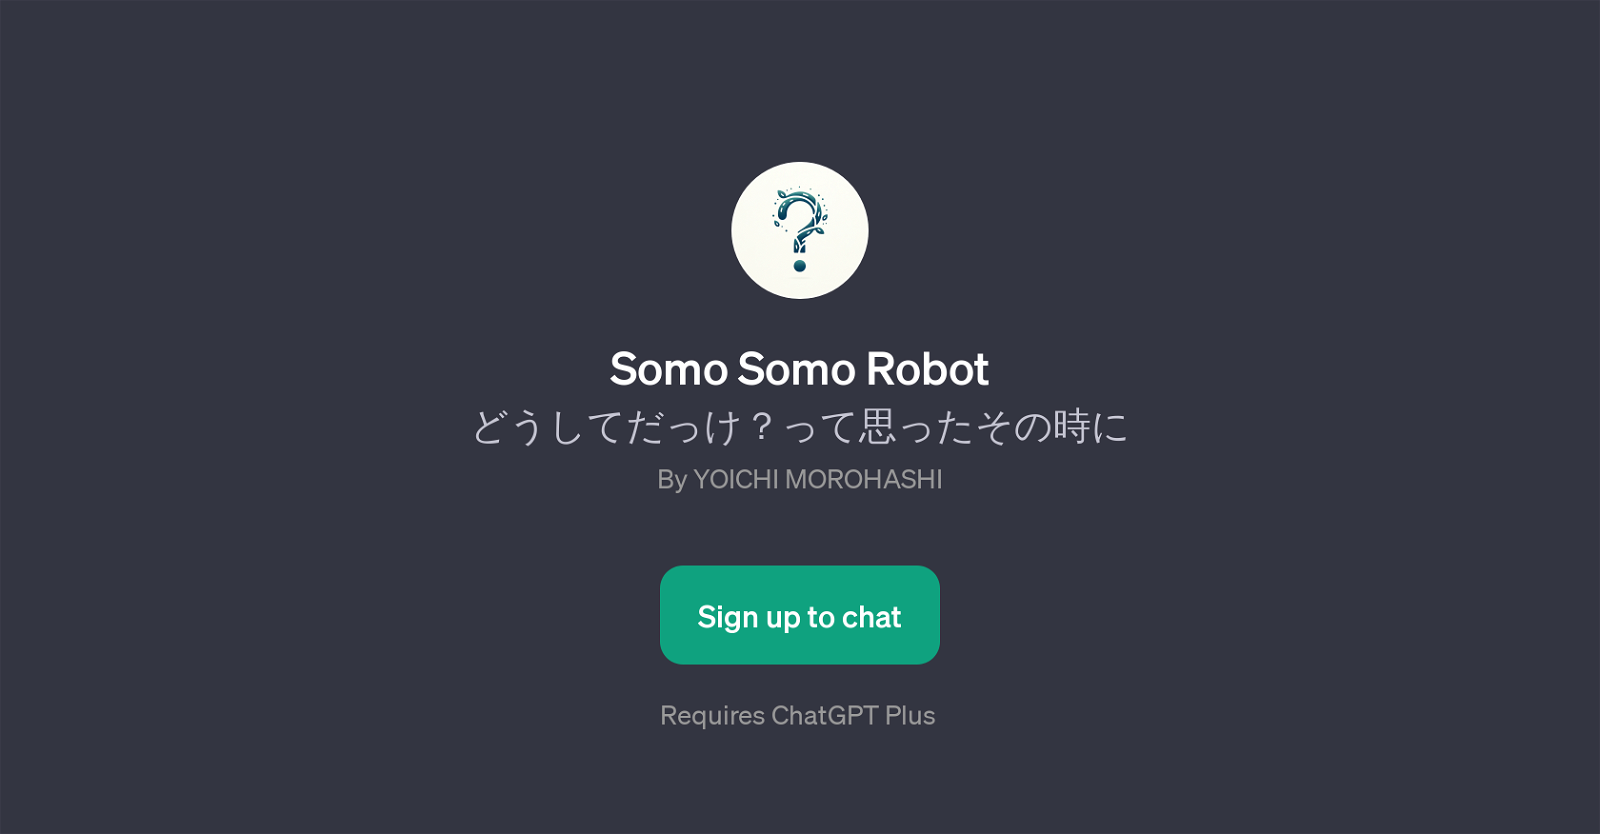 Somo Somo Robot website